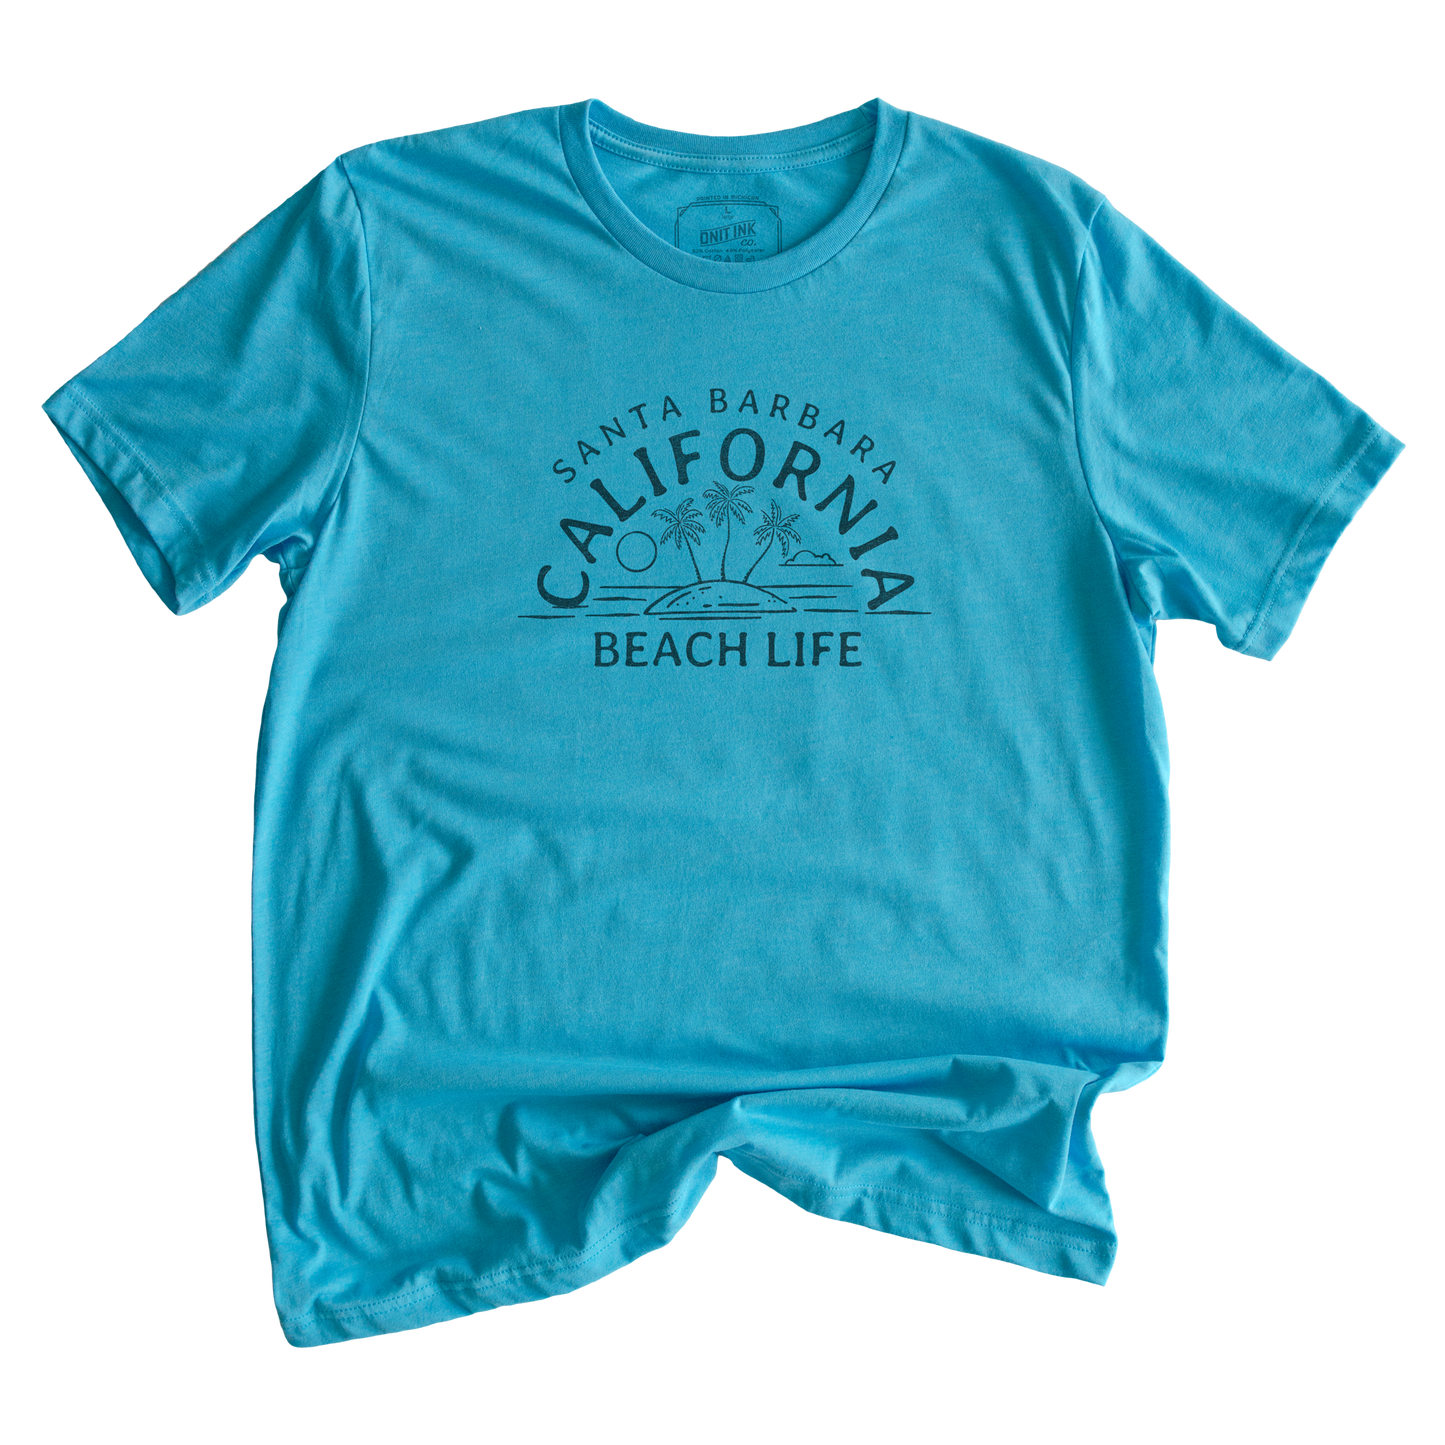 Beach Life Santa Barbara California T-Shirt